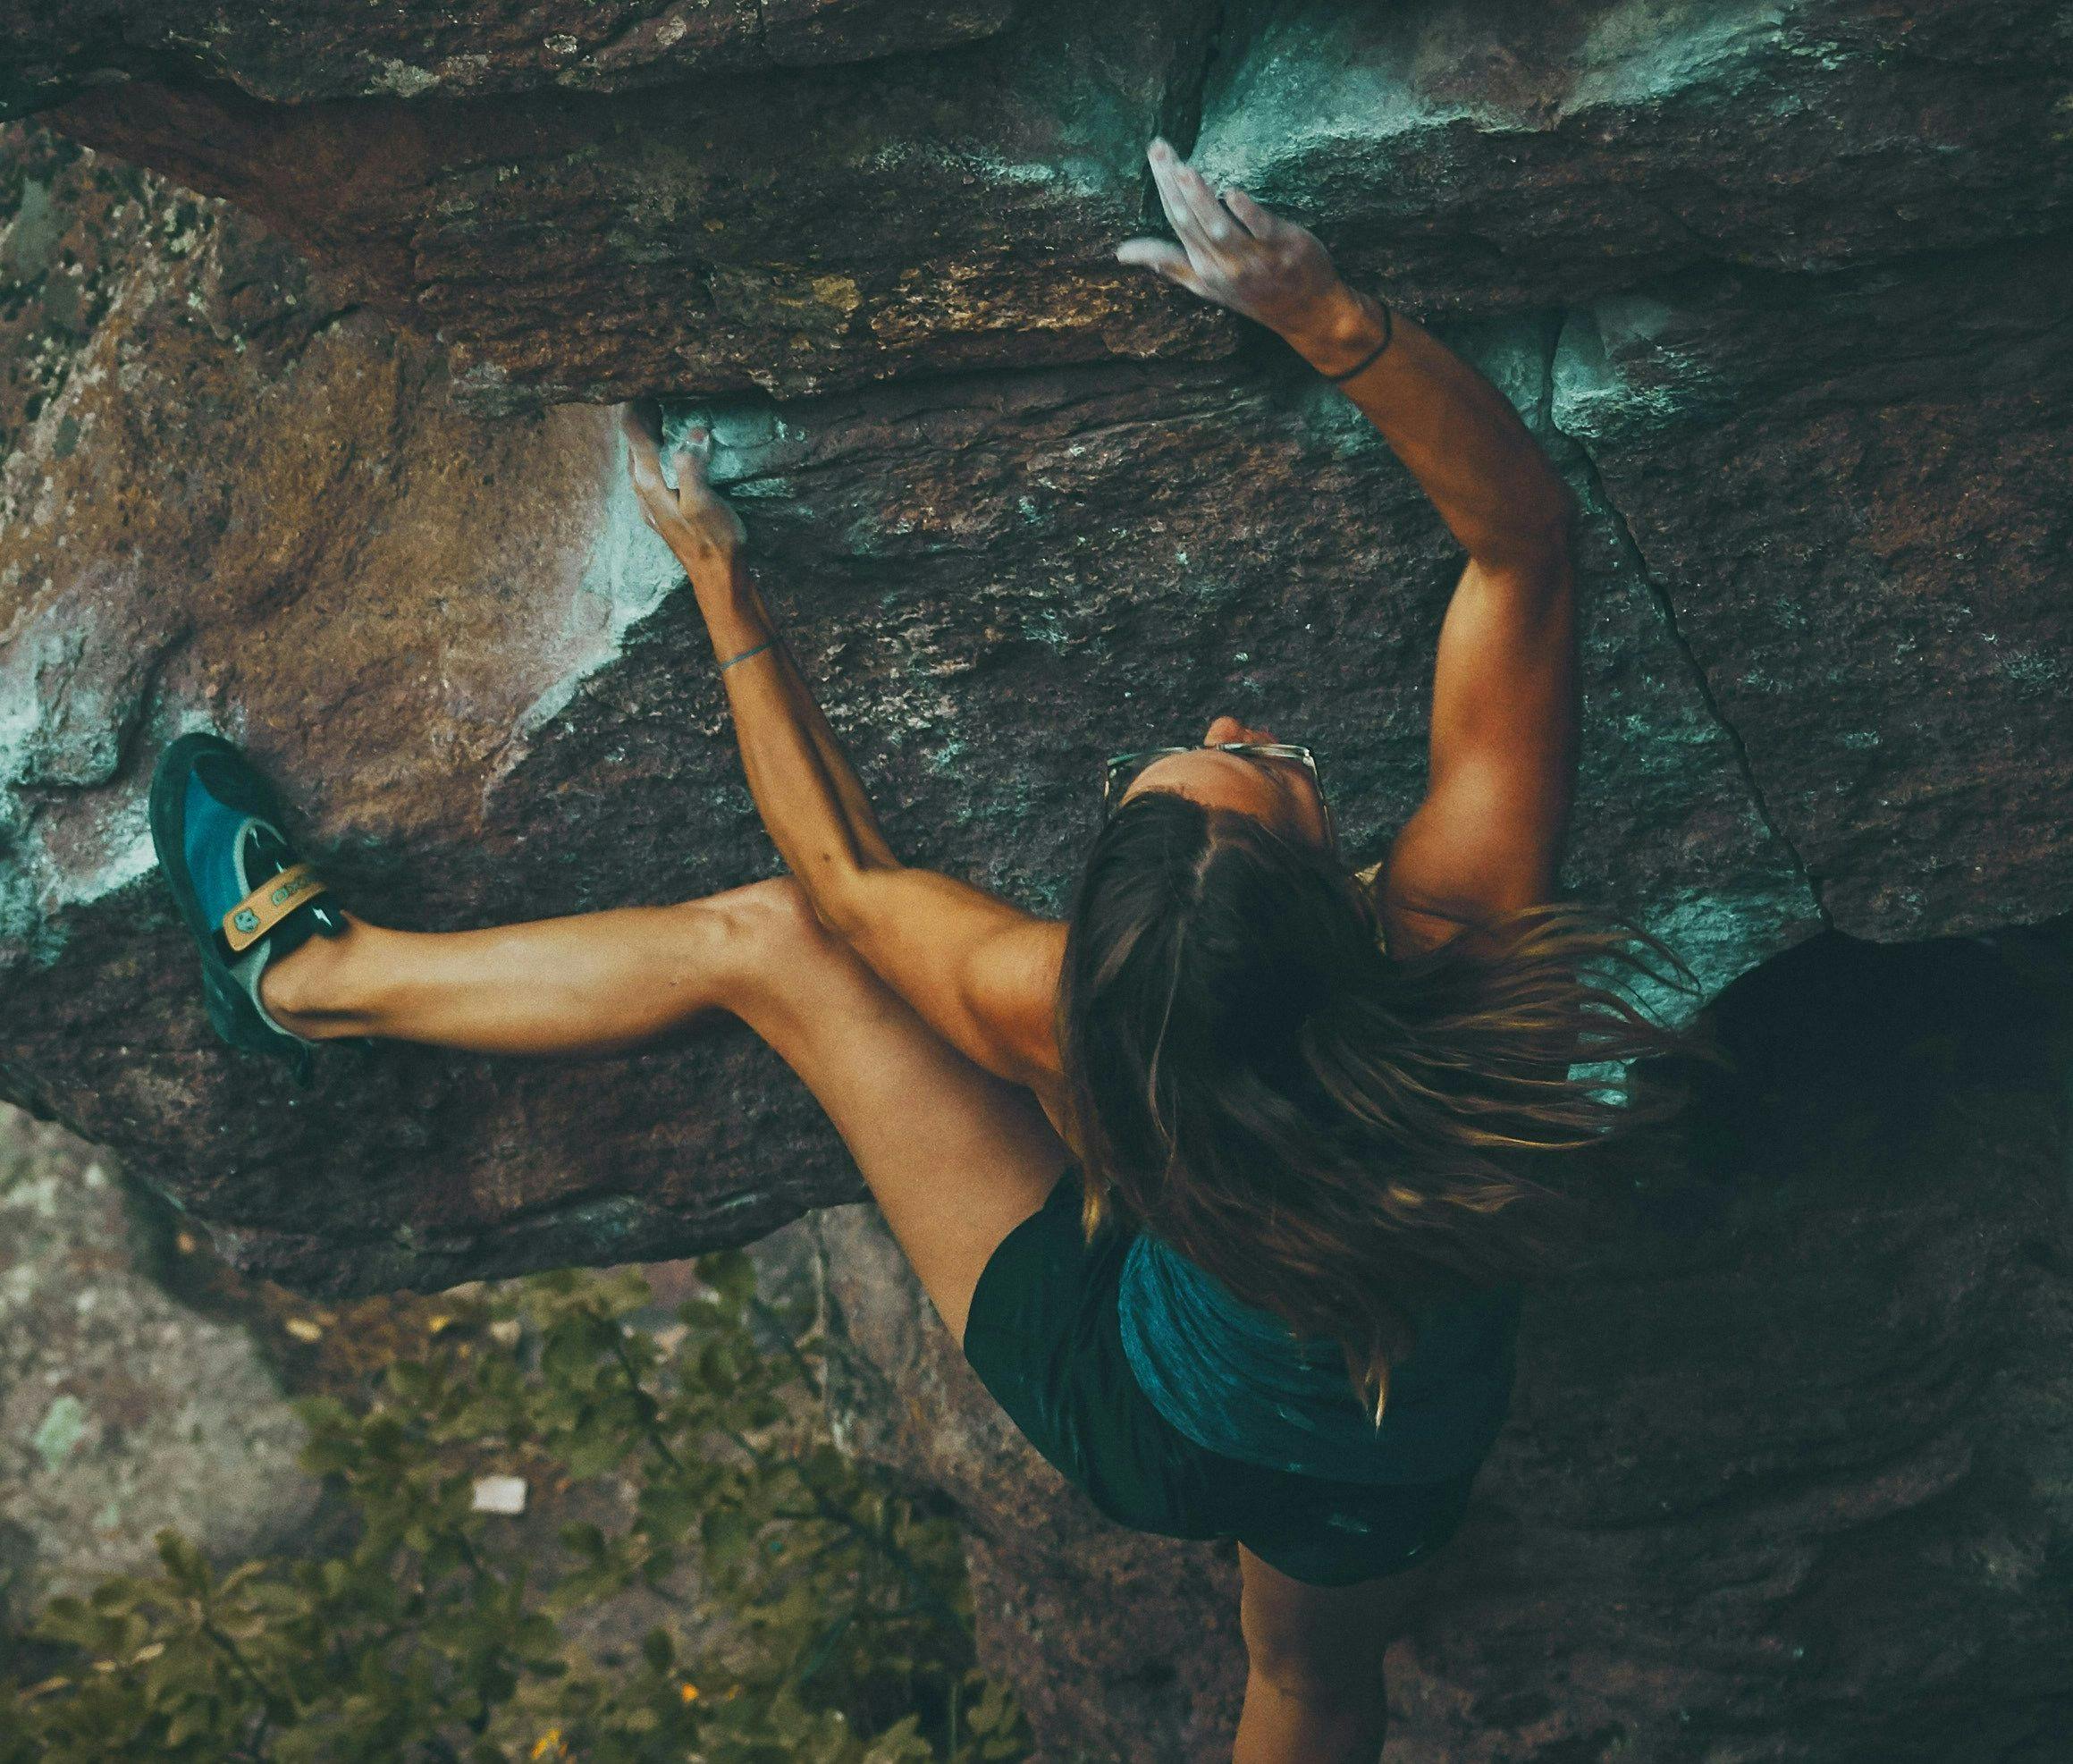 en kvinne klatrer opp en stor stein